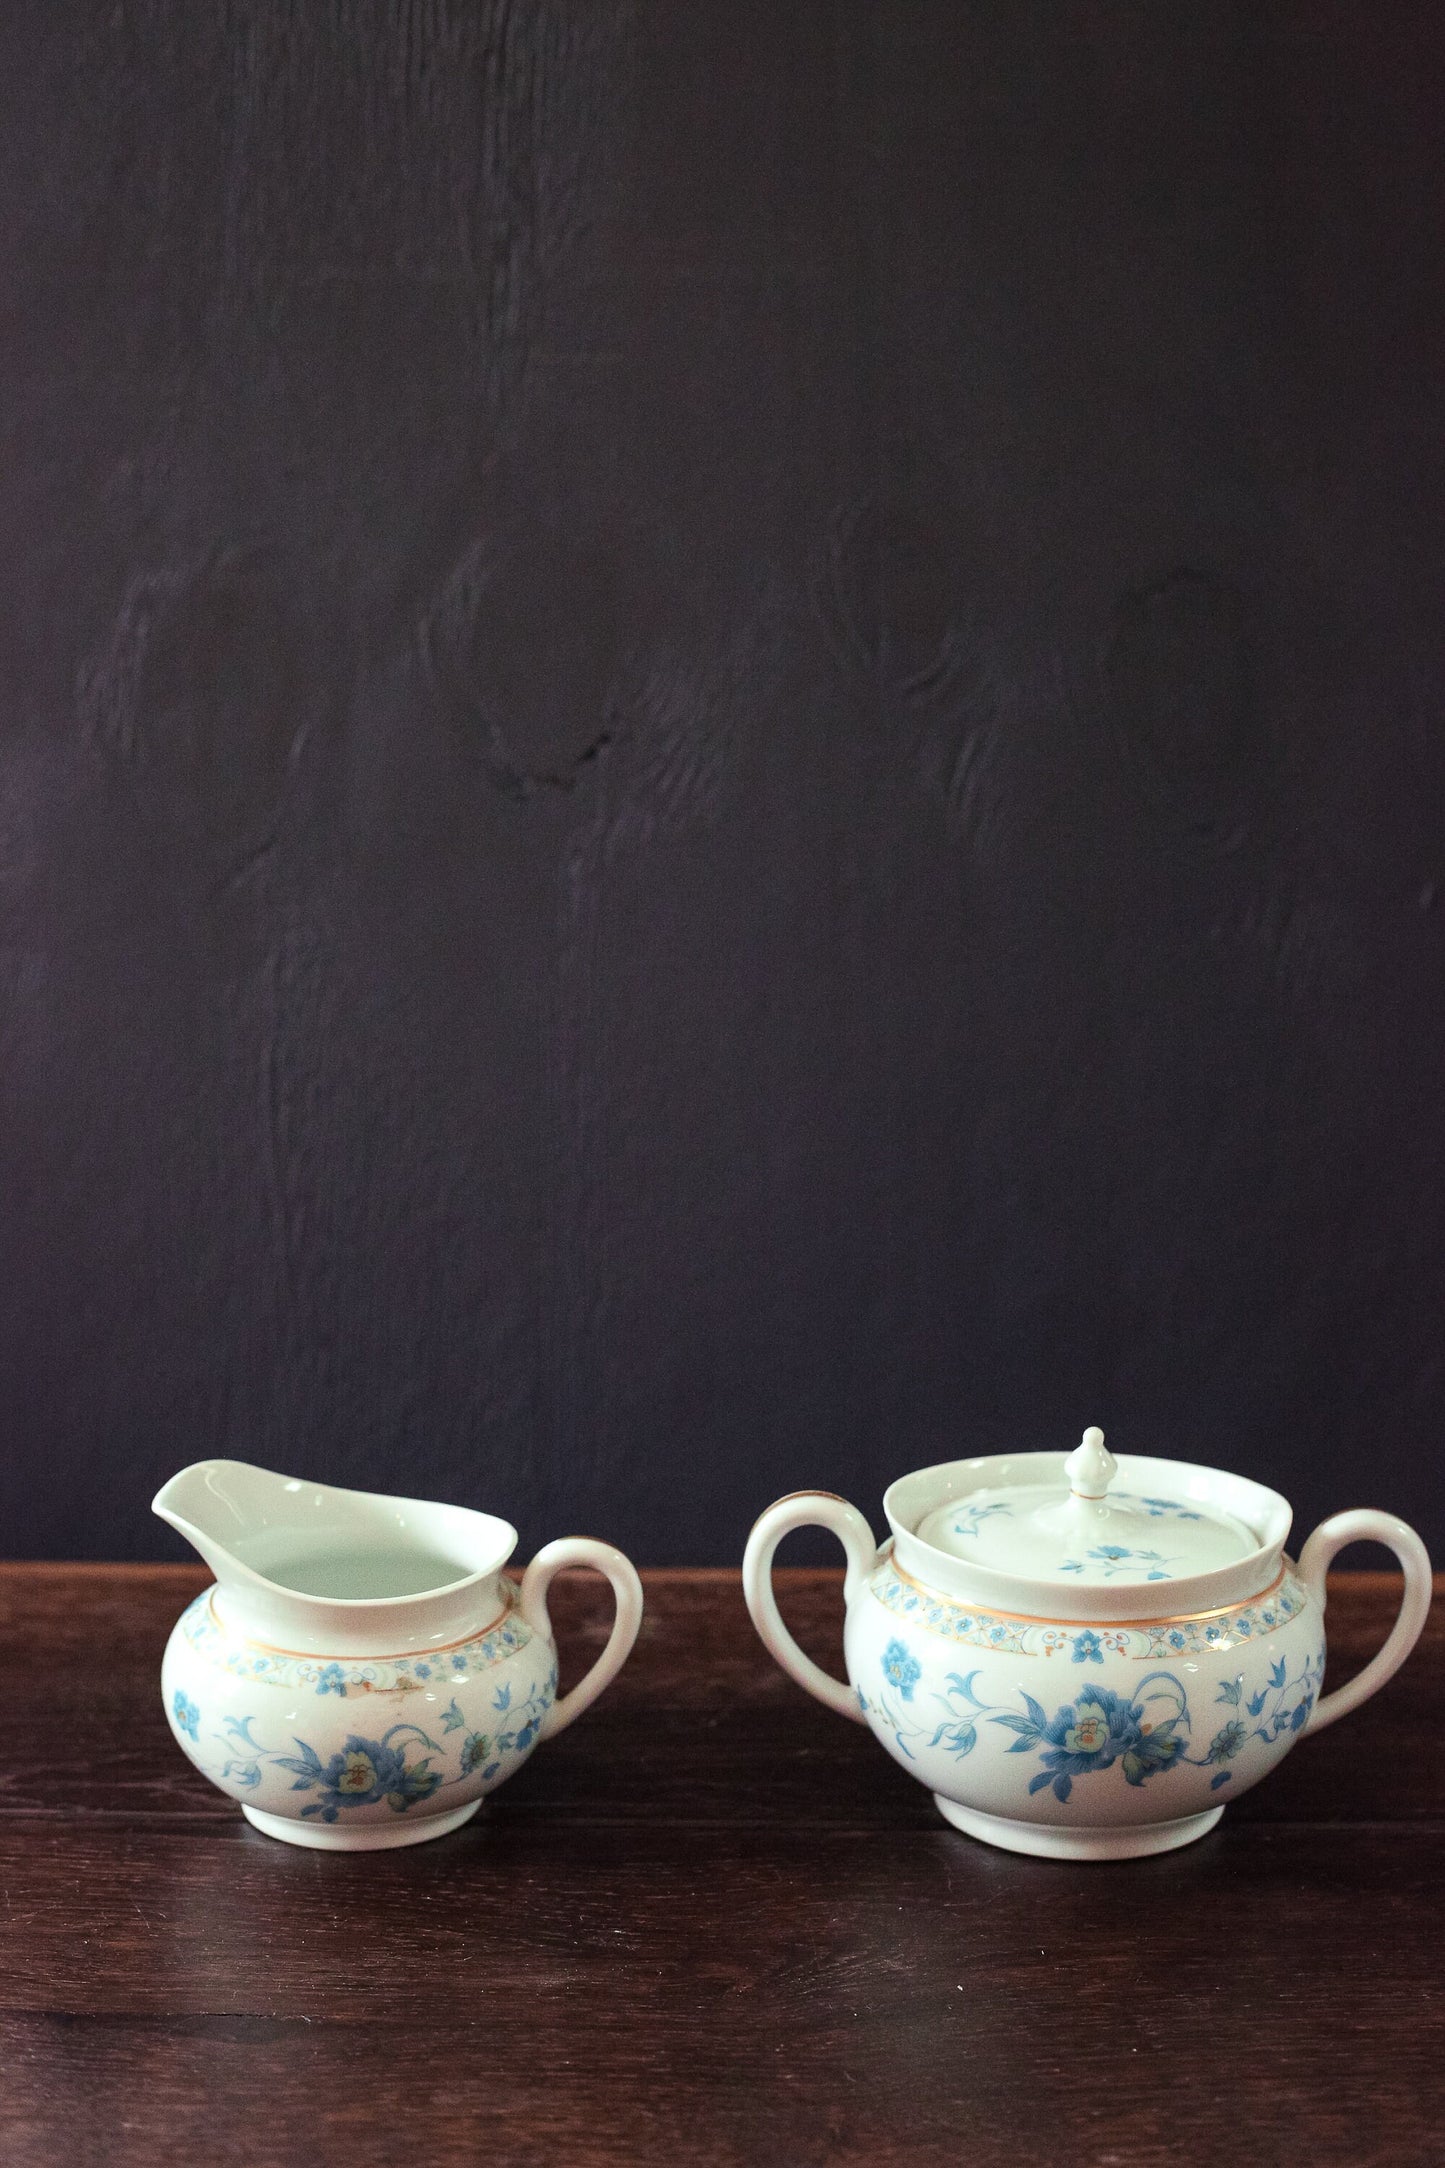 Nankin Cream & Sugar Set with Blue White Gold Floral Design - Antique Haviland Limoges Porcelain Cream and Sugar